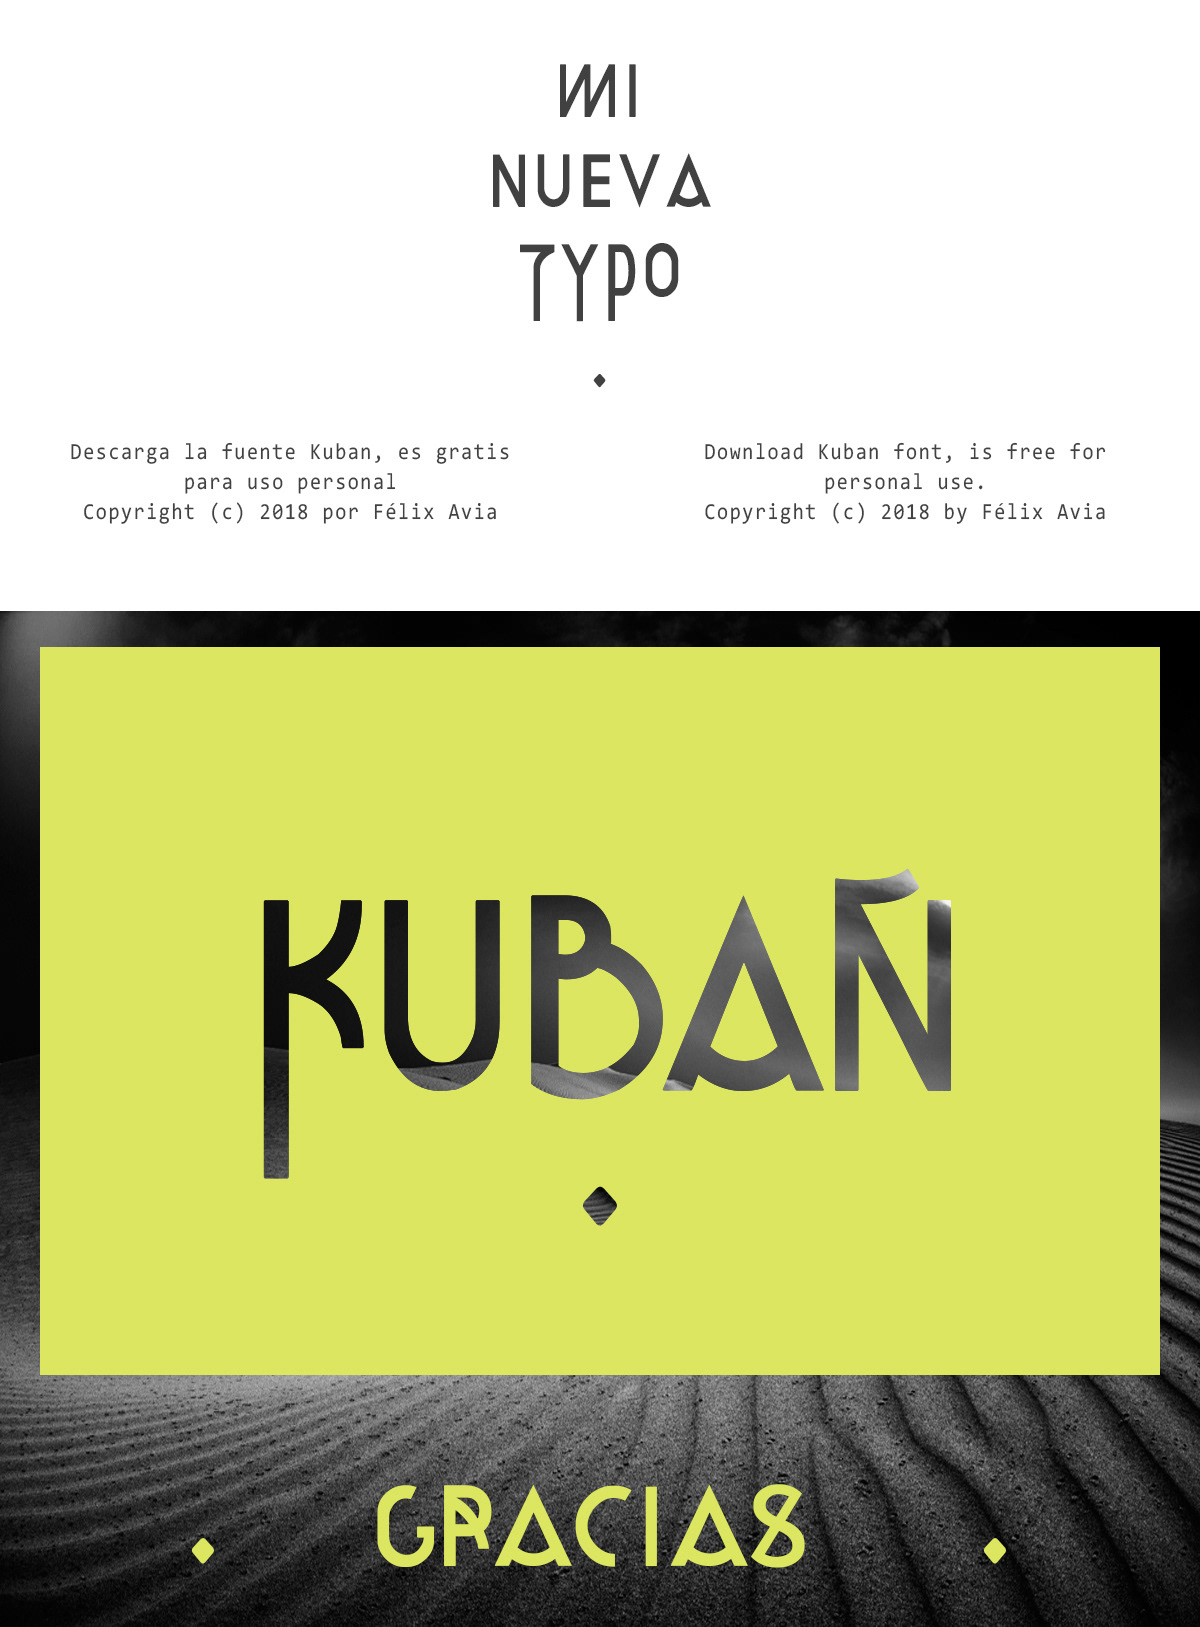 font typographic typo tipografia Kuban fuente gratis free typography   type